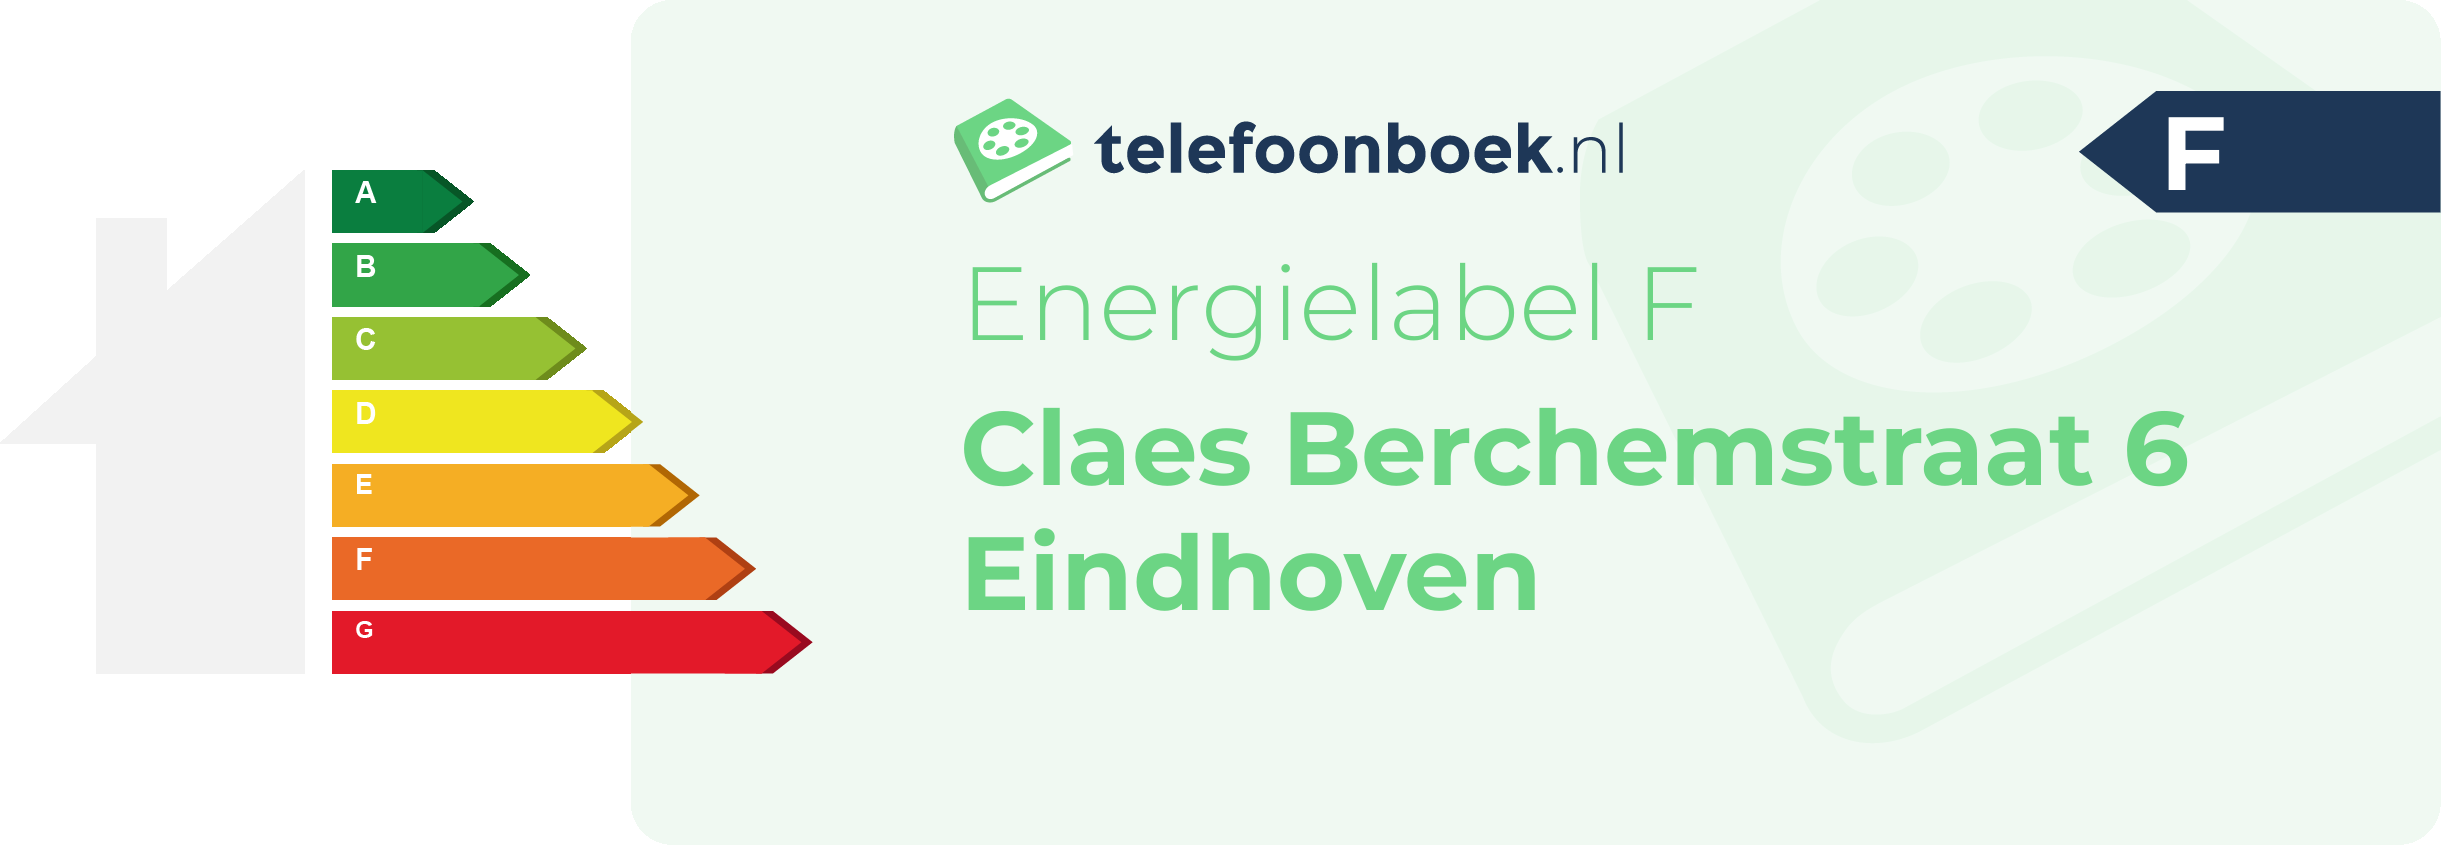 Energielabel Claes Berchemstraat 6 Eindhoven